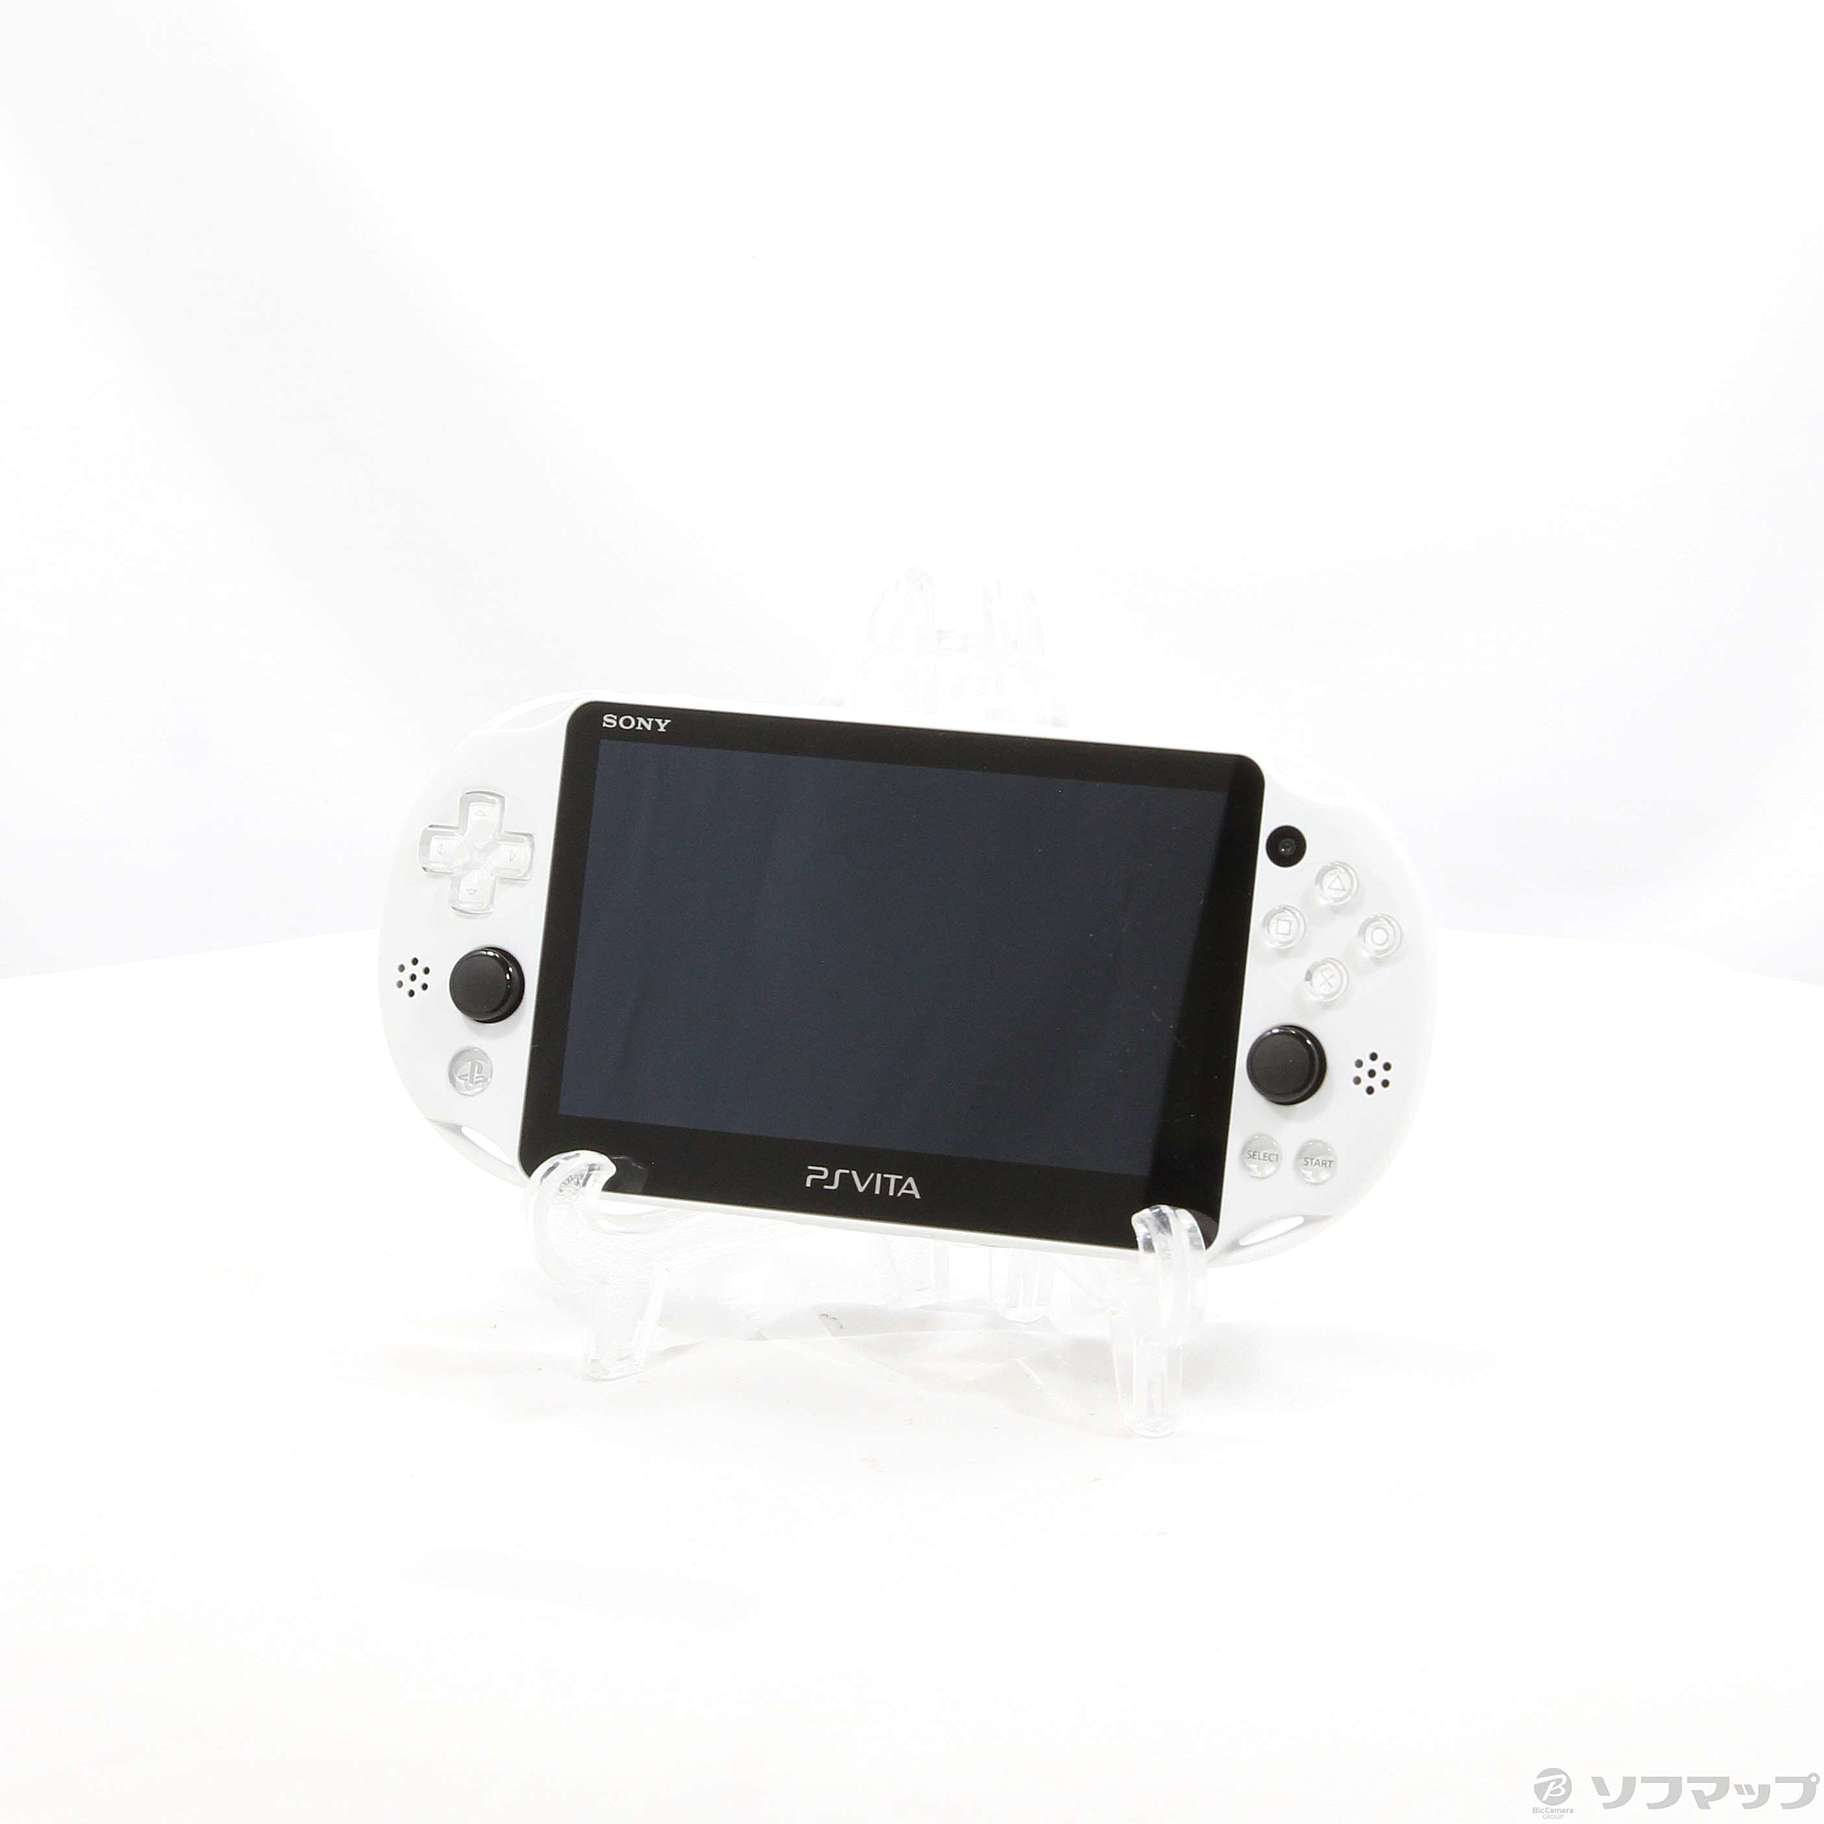 中古】PlayStation Vita WI-FIモデル グレイシャーホワイト PCH-2000ZA ...